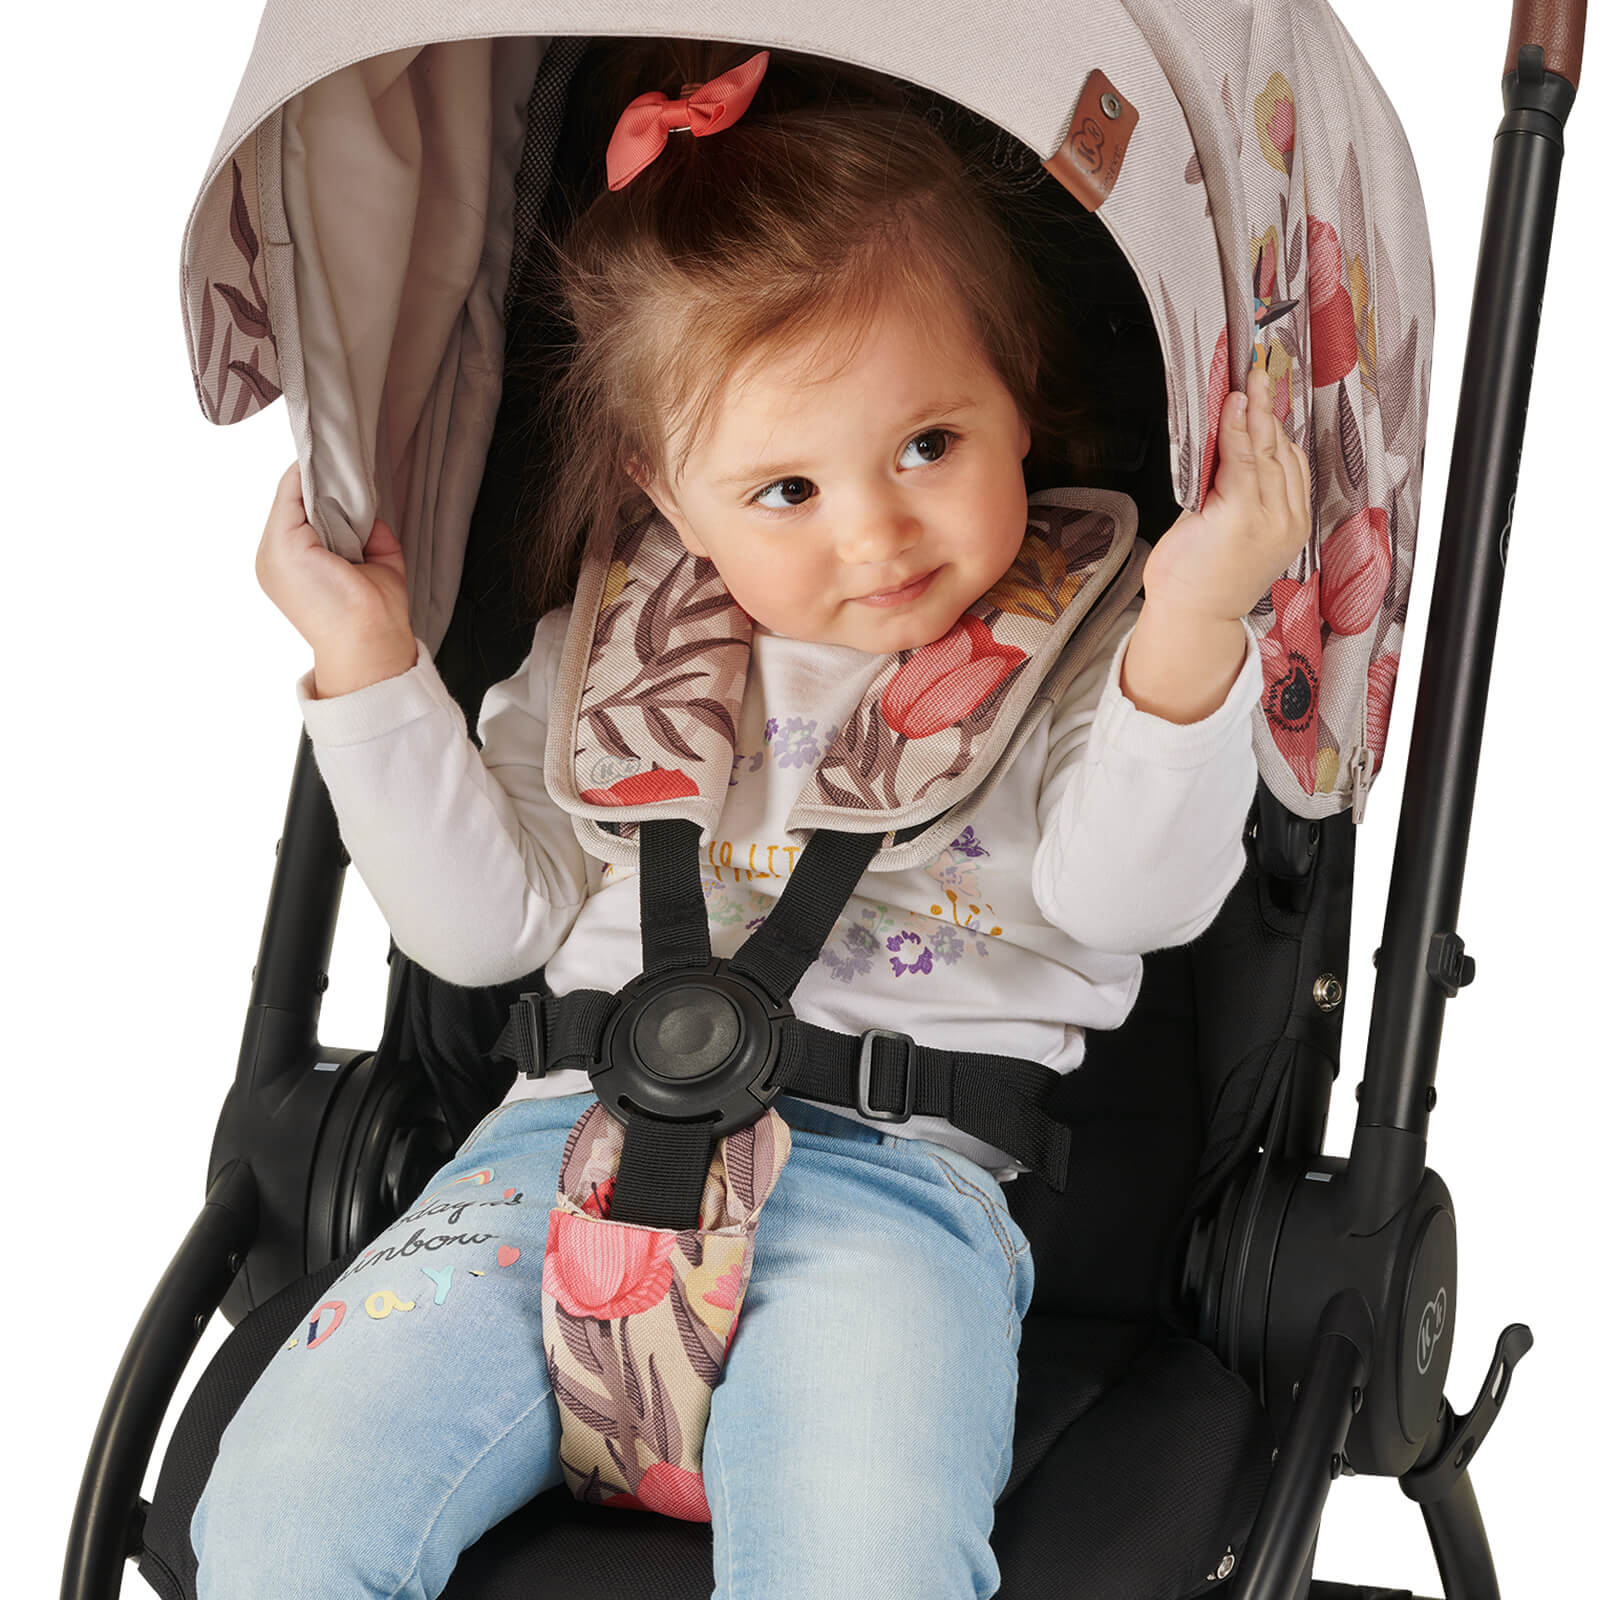 Una niña pequeña está sentada en la silla de paseo, abrochada con cinturones, agarra la visera y sonríe